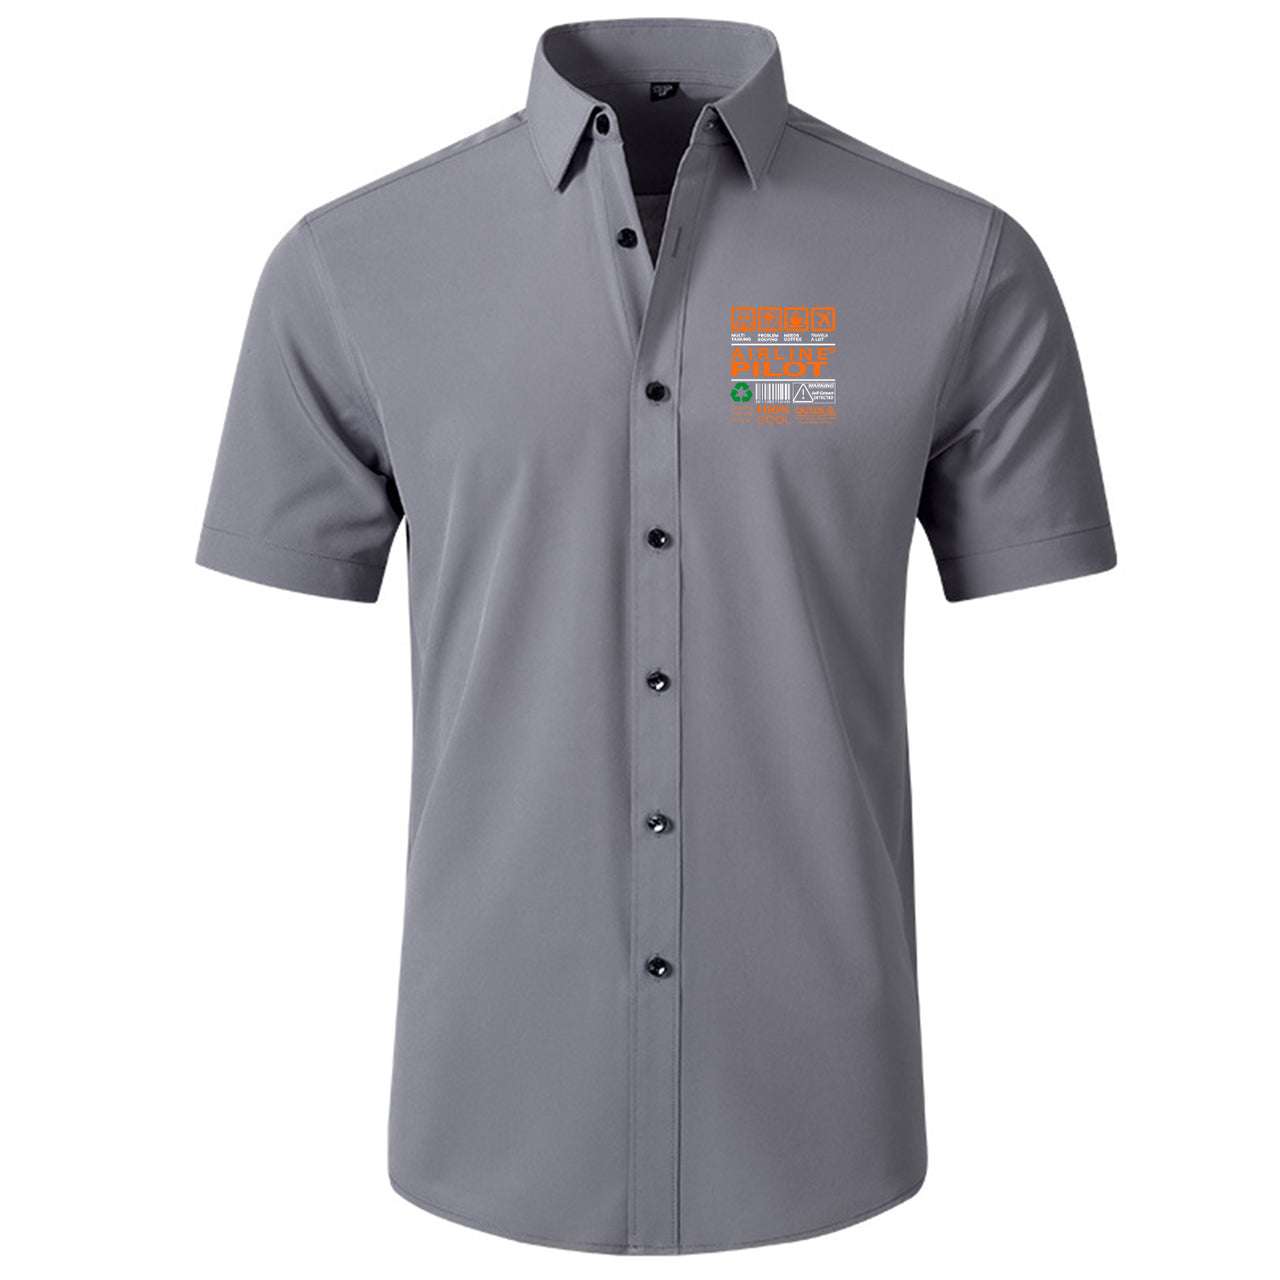 Airline Pilot Label Designed Short Sleeve Shirts